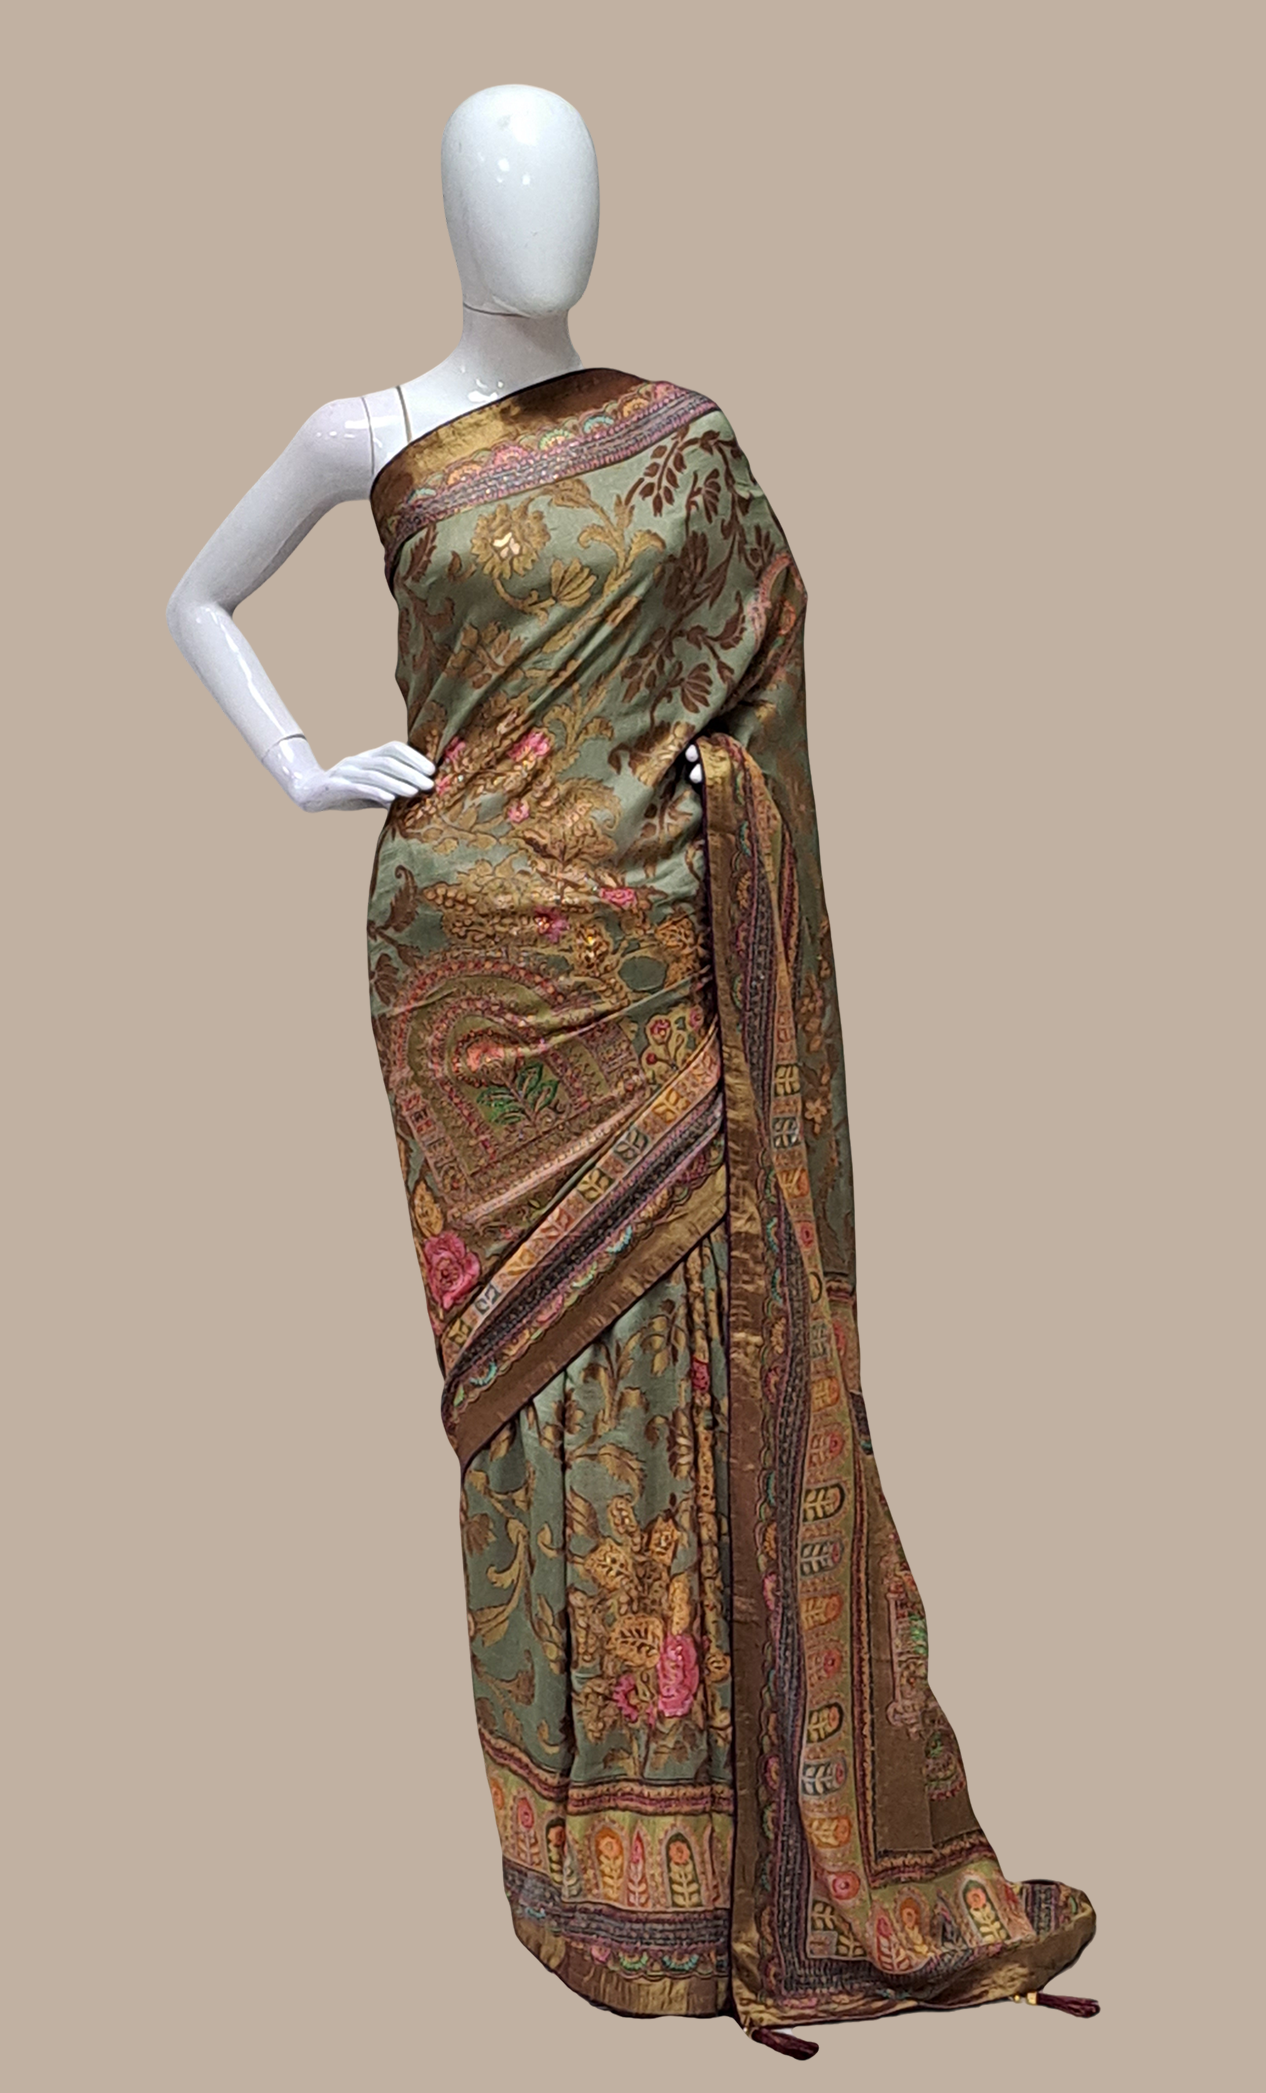 Deep Olive Printed Sari